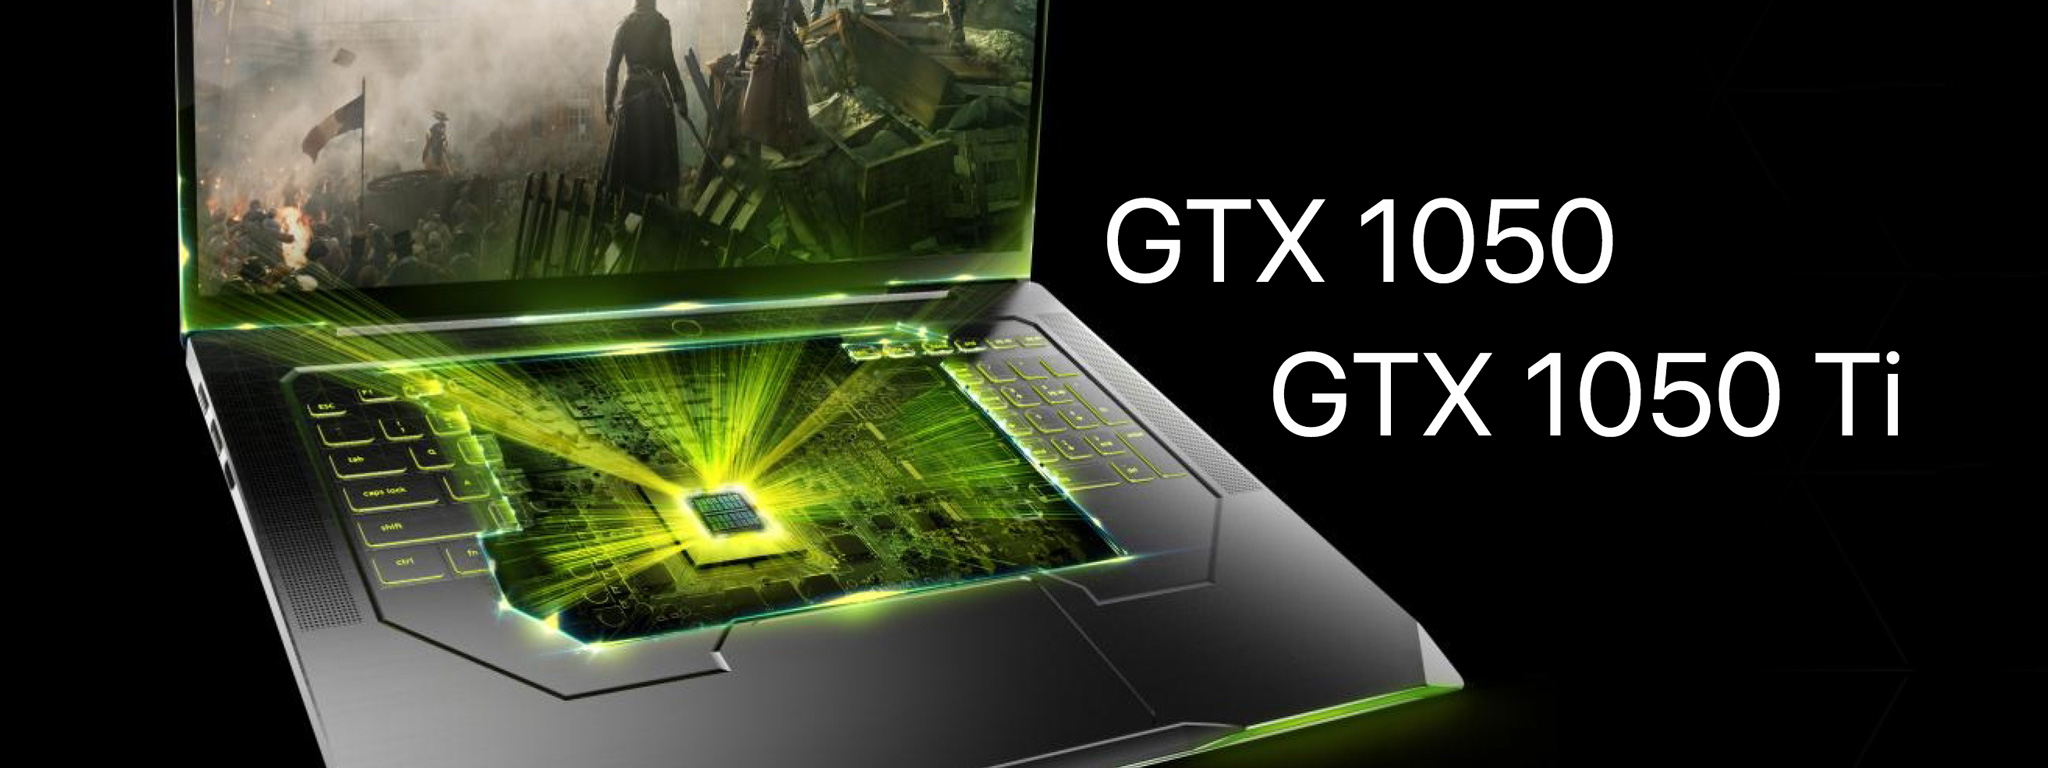 [CES 2017] NVIDIA GTX 1050 nay đã có cho laptop, thêm bản GTX 1050 Ti, giá máy chỉ từ 700$